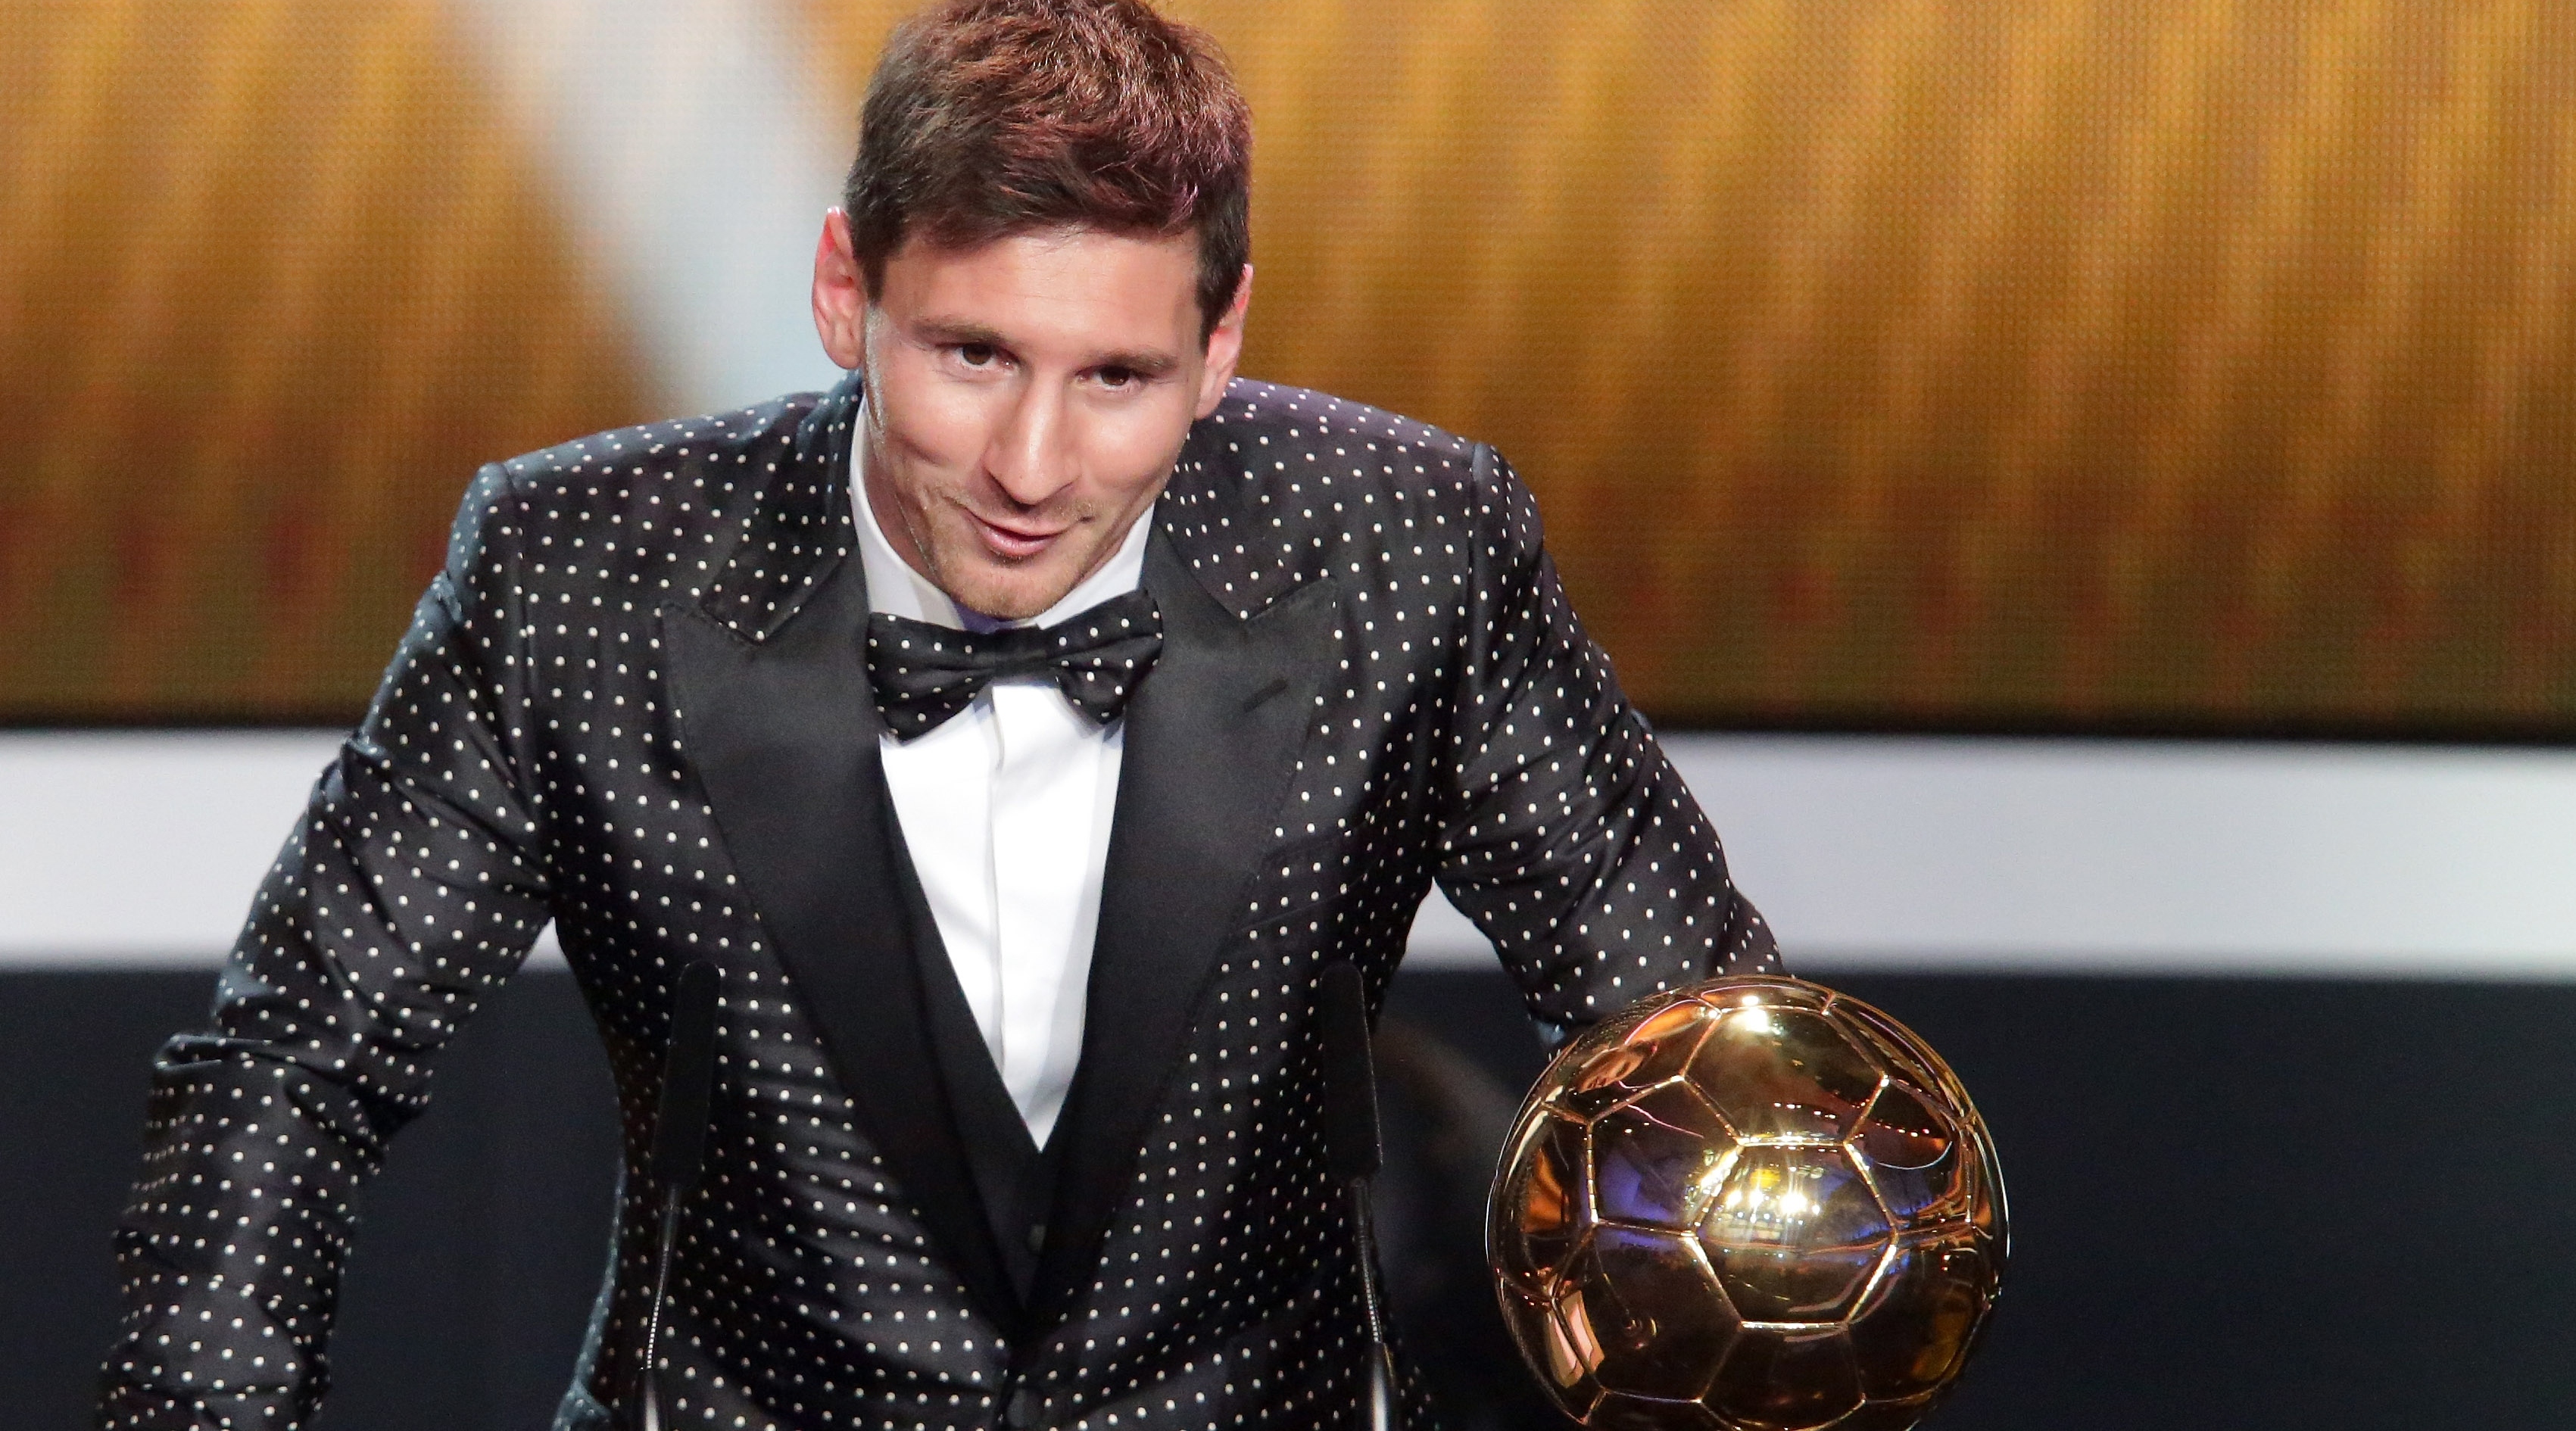 ZURICH, SUISSE - 7 JANVIER : L'Argentin Lionel Messi reçoit le trophée FIFA Ballon d'Or 2012 le 7 janvier 2013 à Zurich, en Suisse.  (Photo de Christof Koepsel/Getty Images)